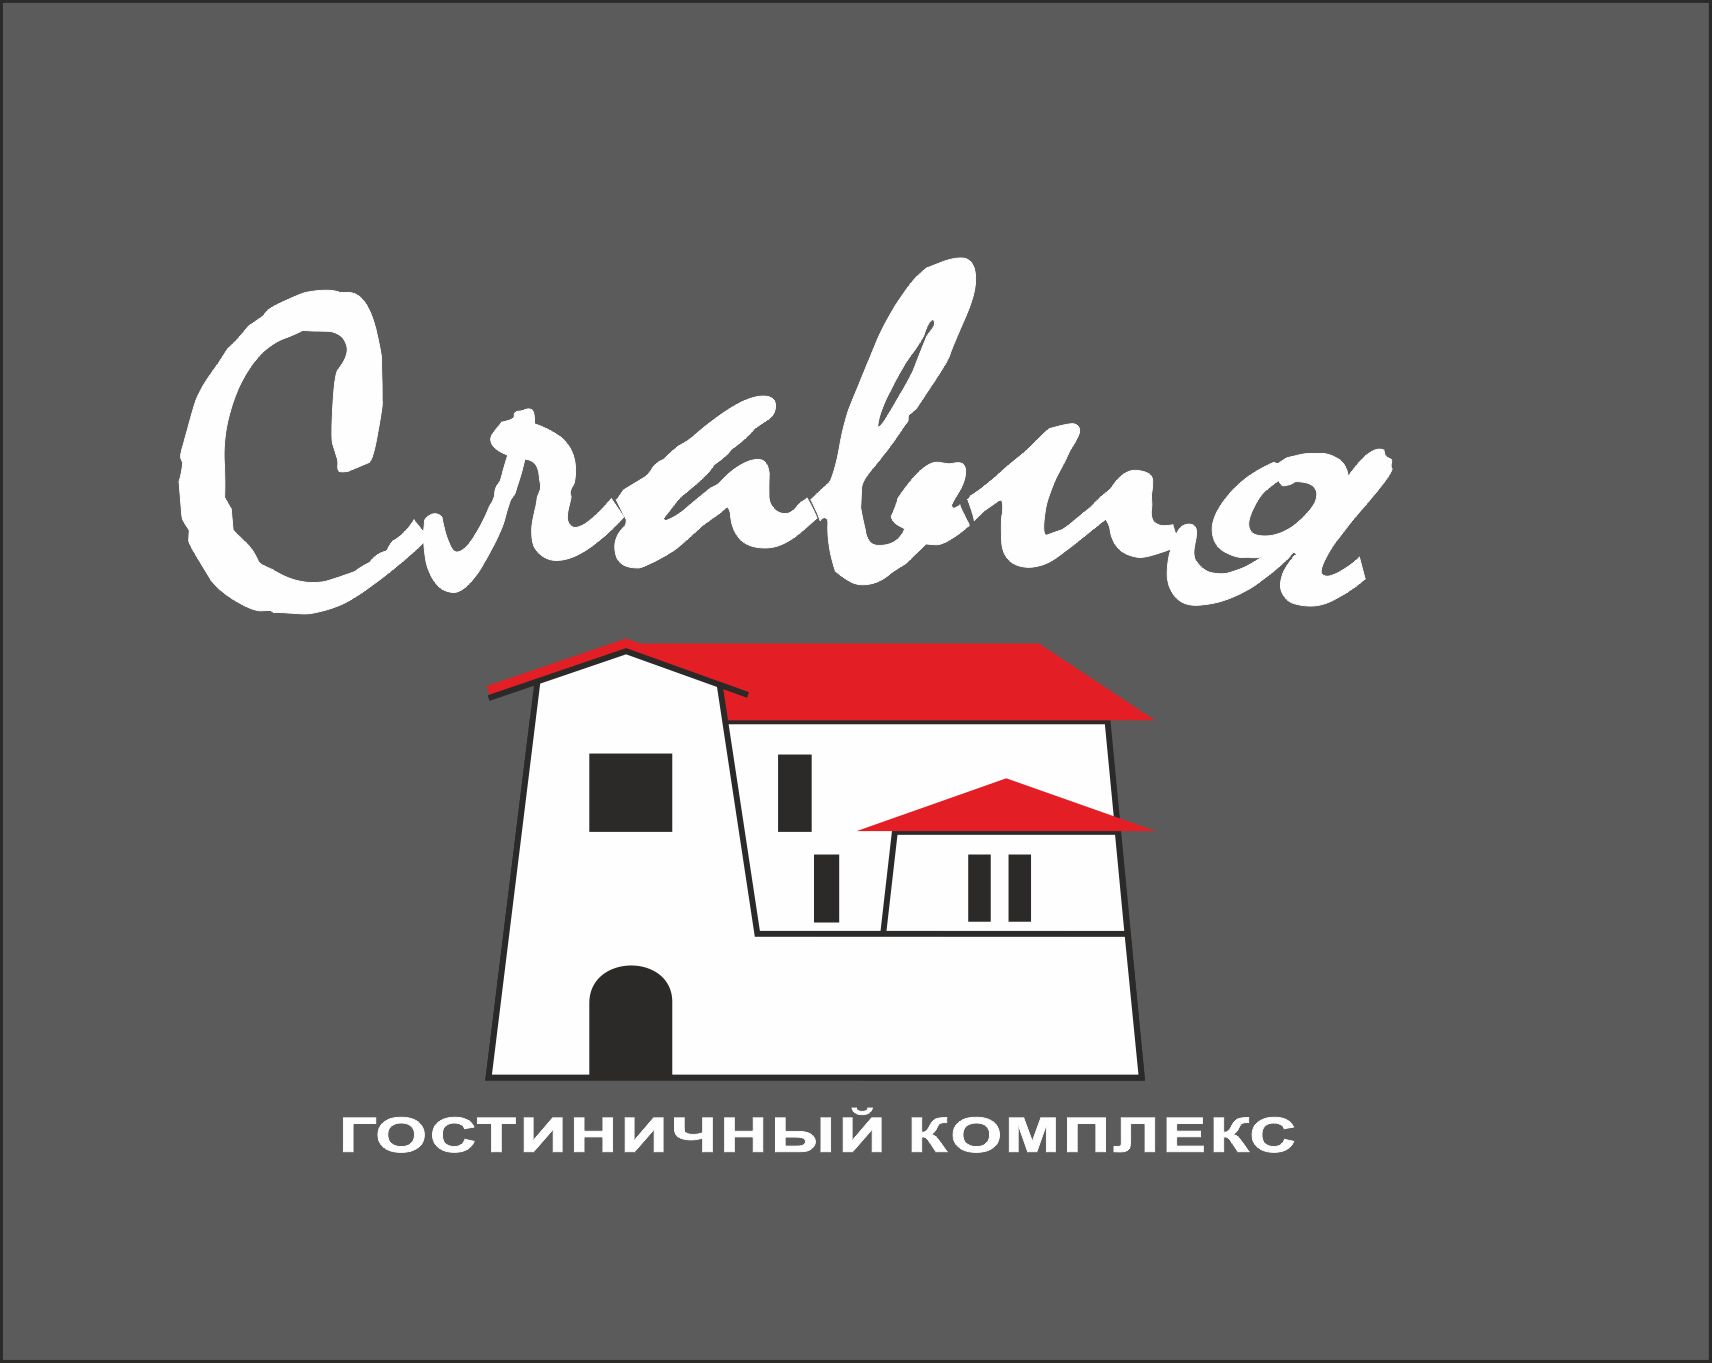 Лого и фирменный стиль для Гостиничный комплекс 